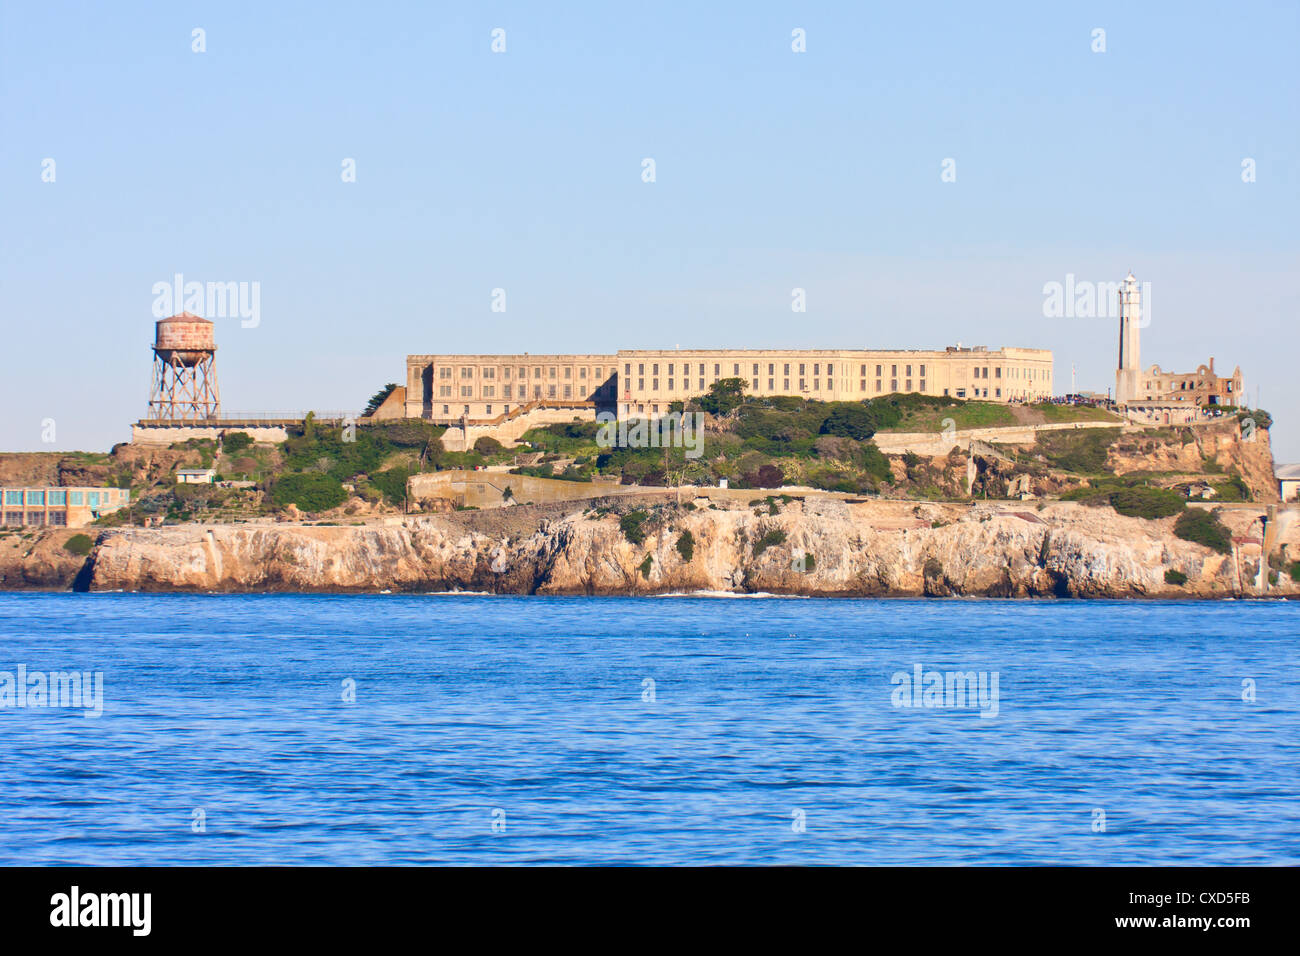 L'île d'Alcatraz, célèbre prison de San Francisco Banque D'Images